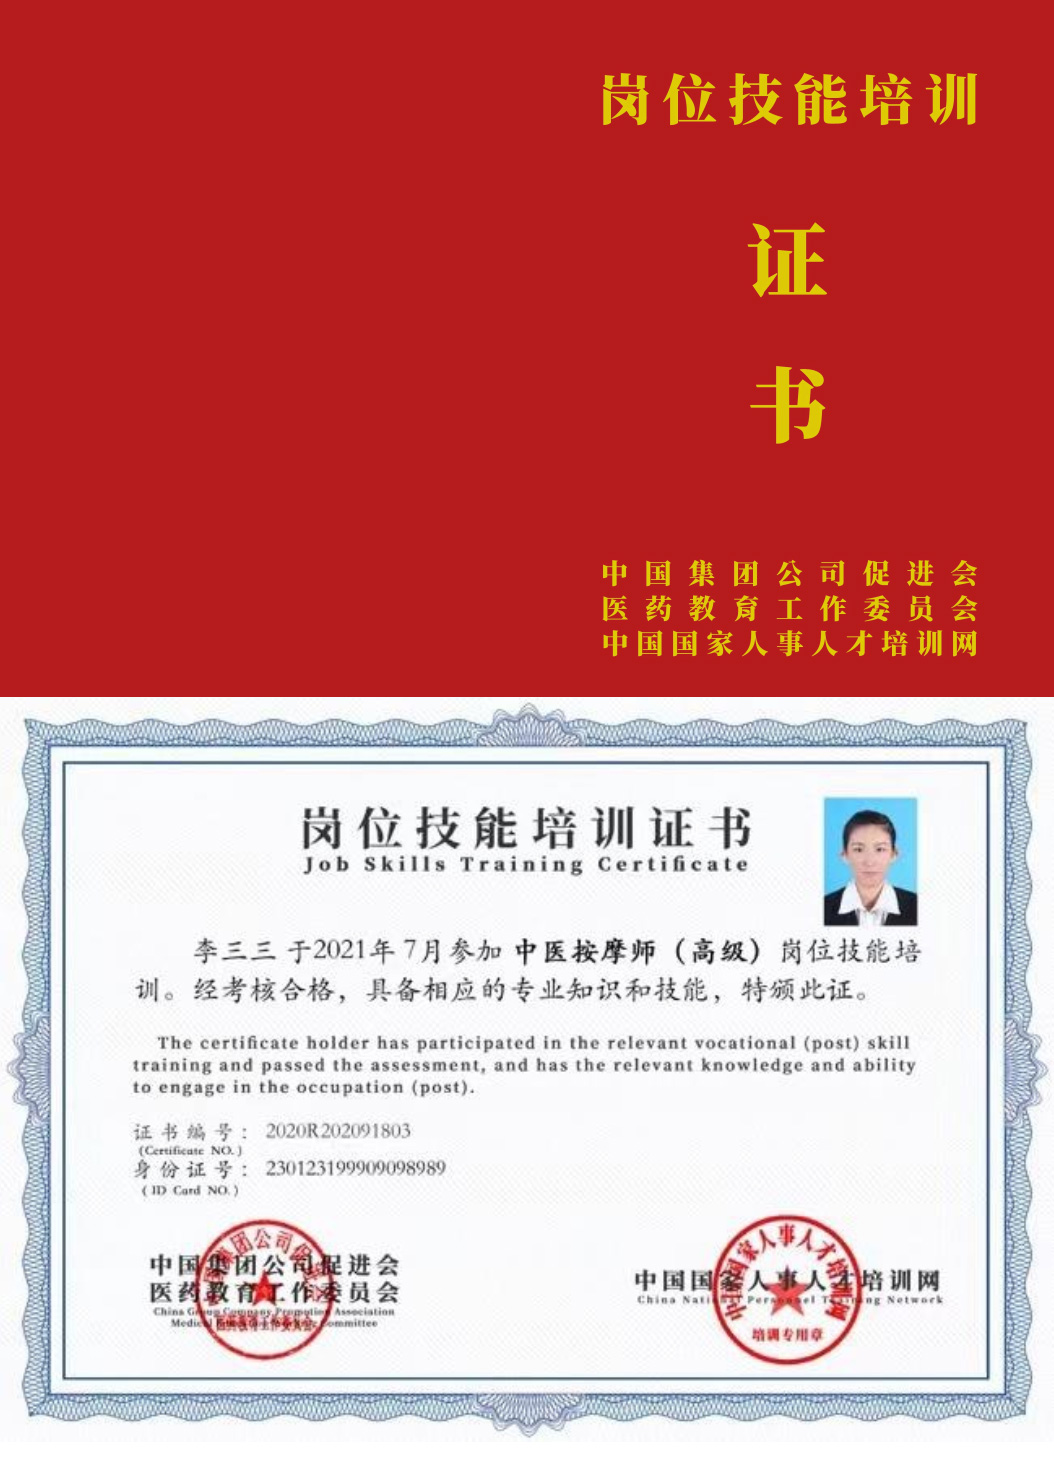 中国国家人事人才培训网 青少年心理成长指导师 岗位技能培训证书